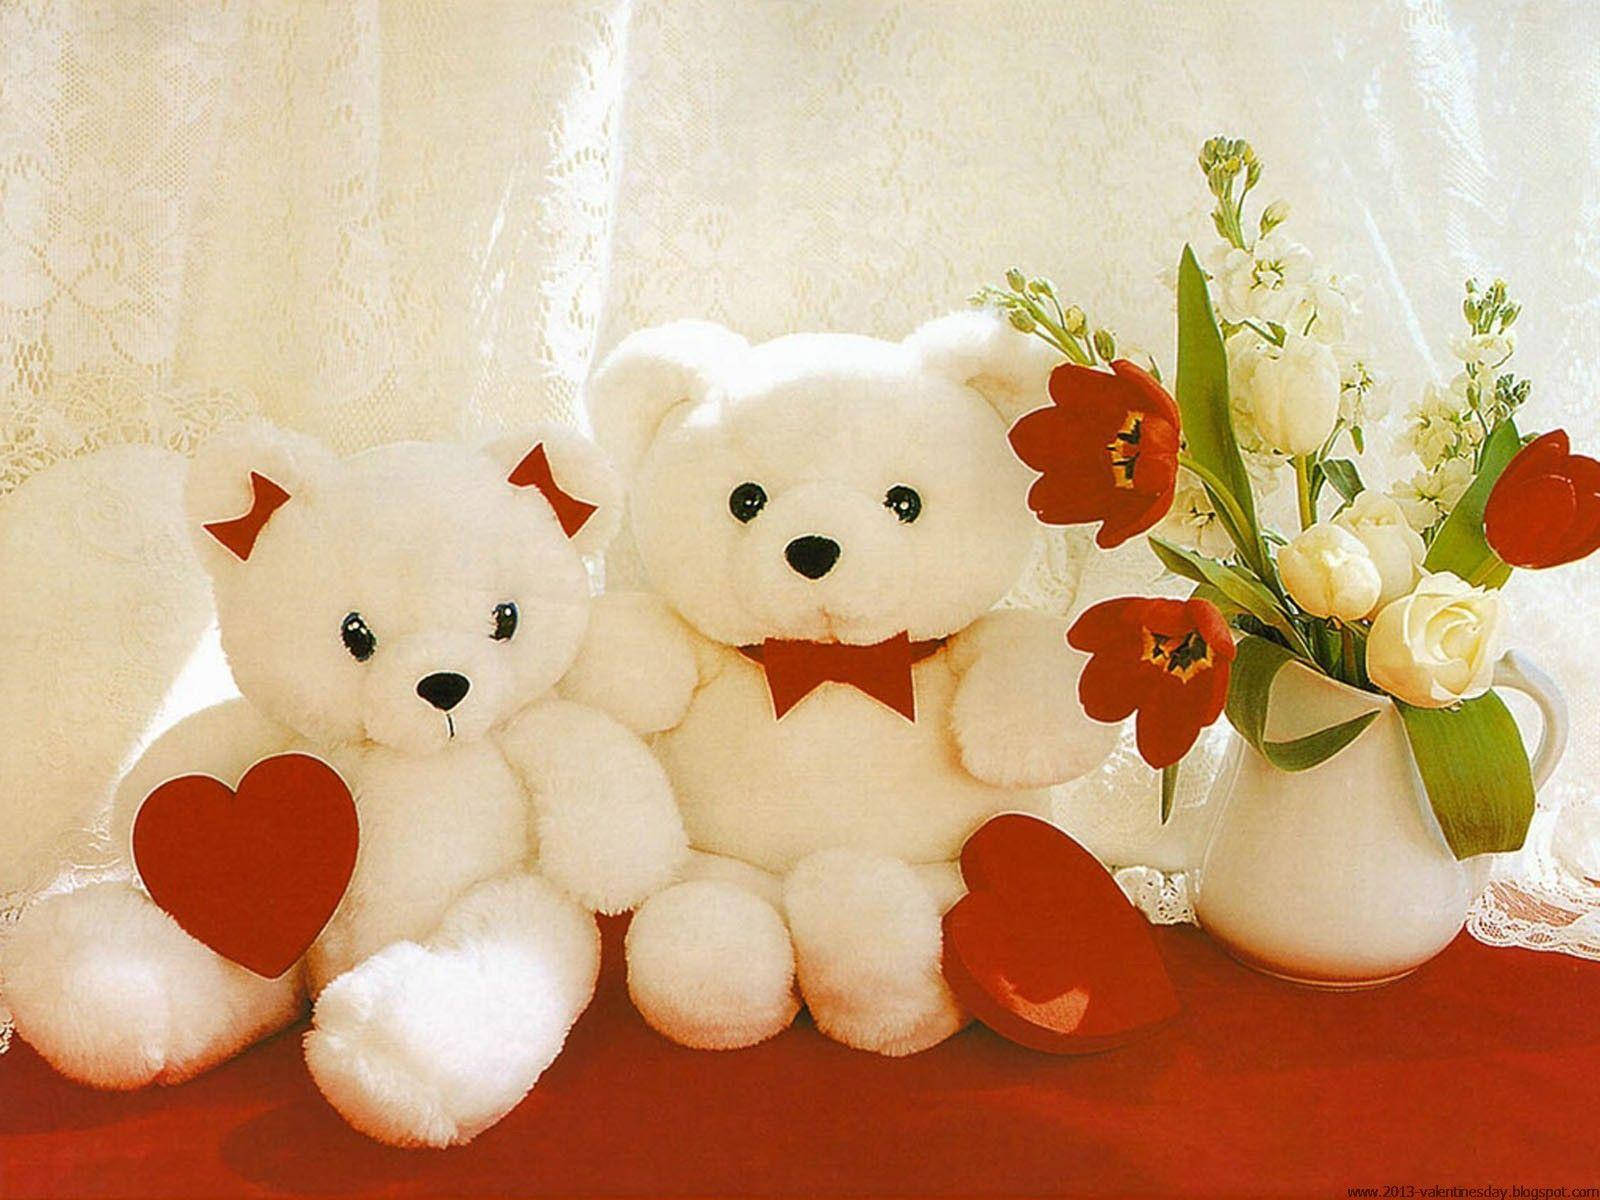 Cute Love Teddy Bears Wallpaper